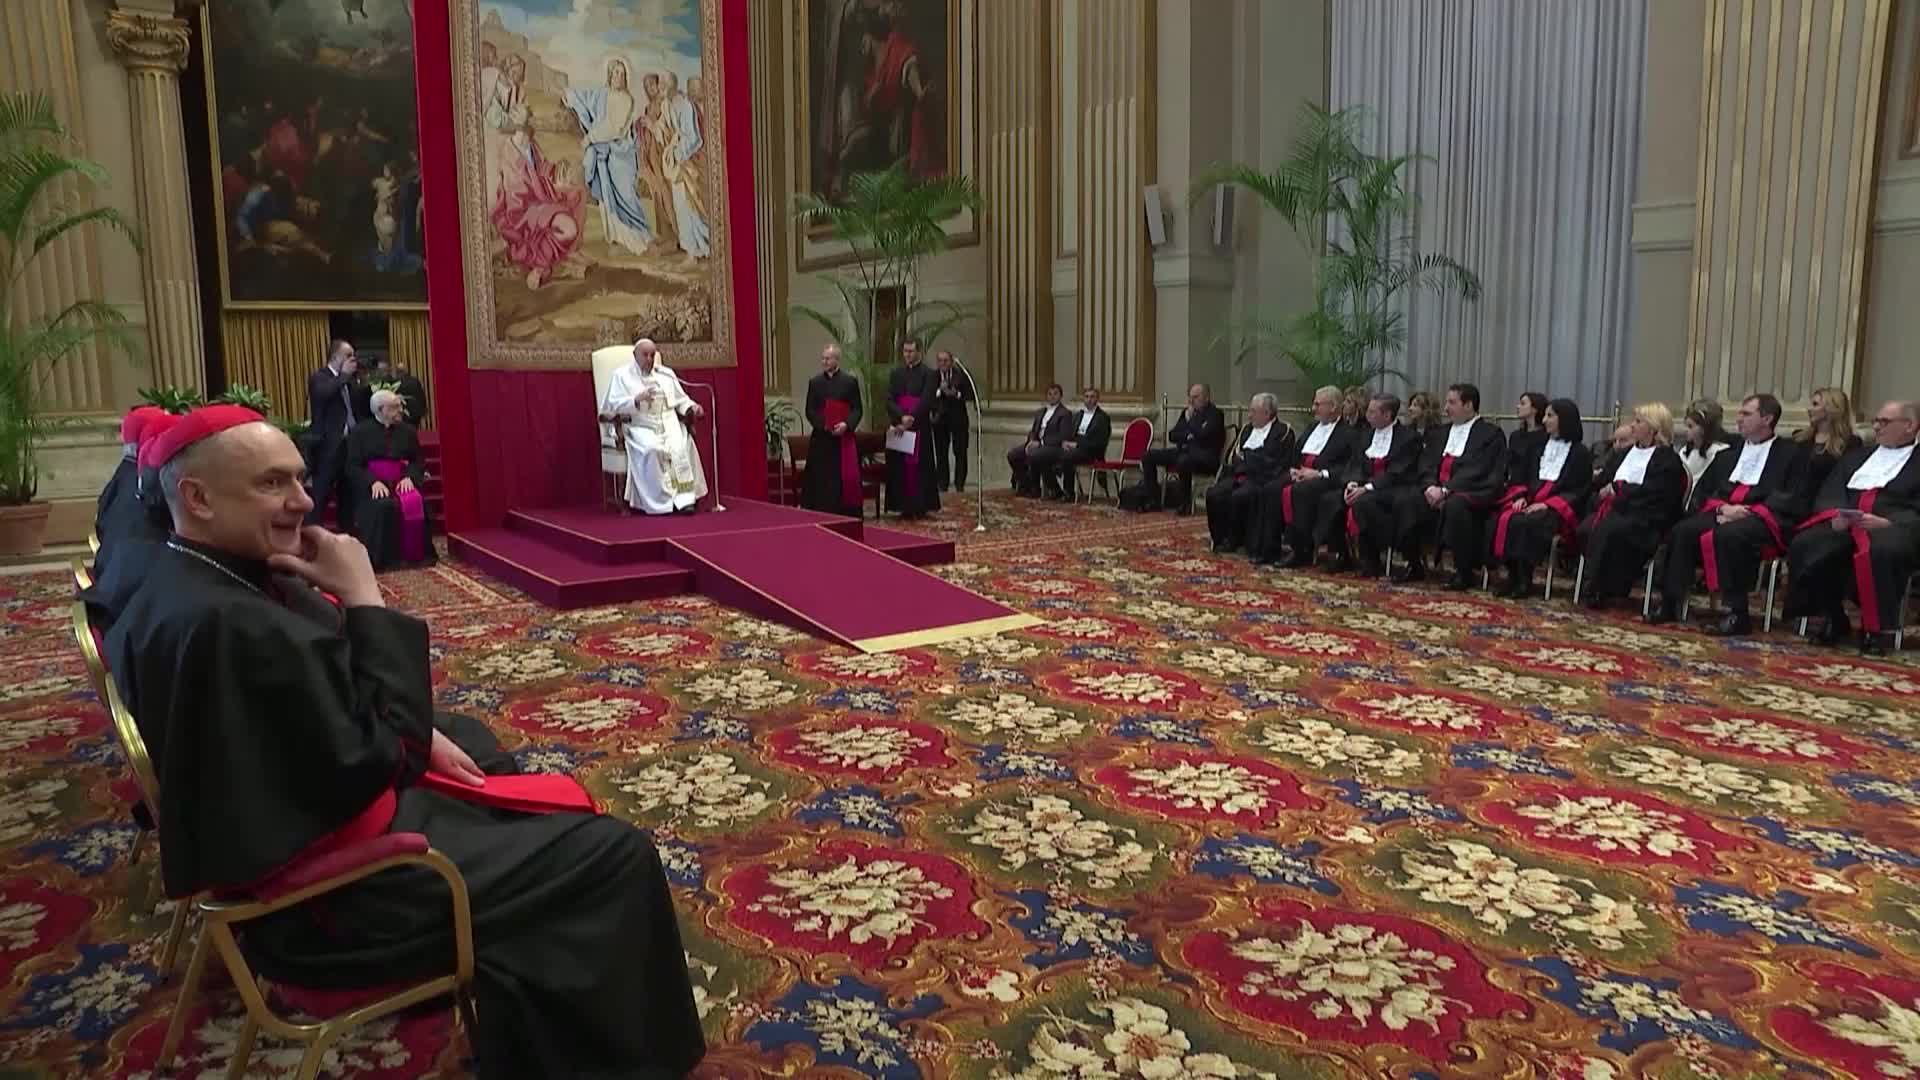 Заради пристъп на кашлица: Папата не успя да прочете реч на събитие във Ватикана